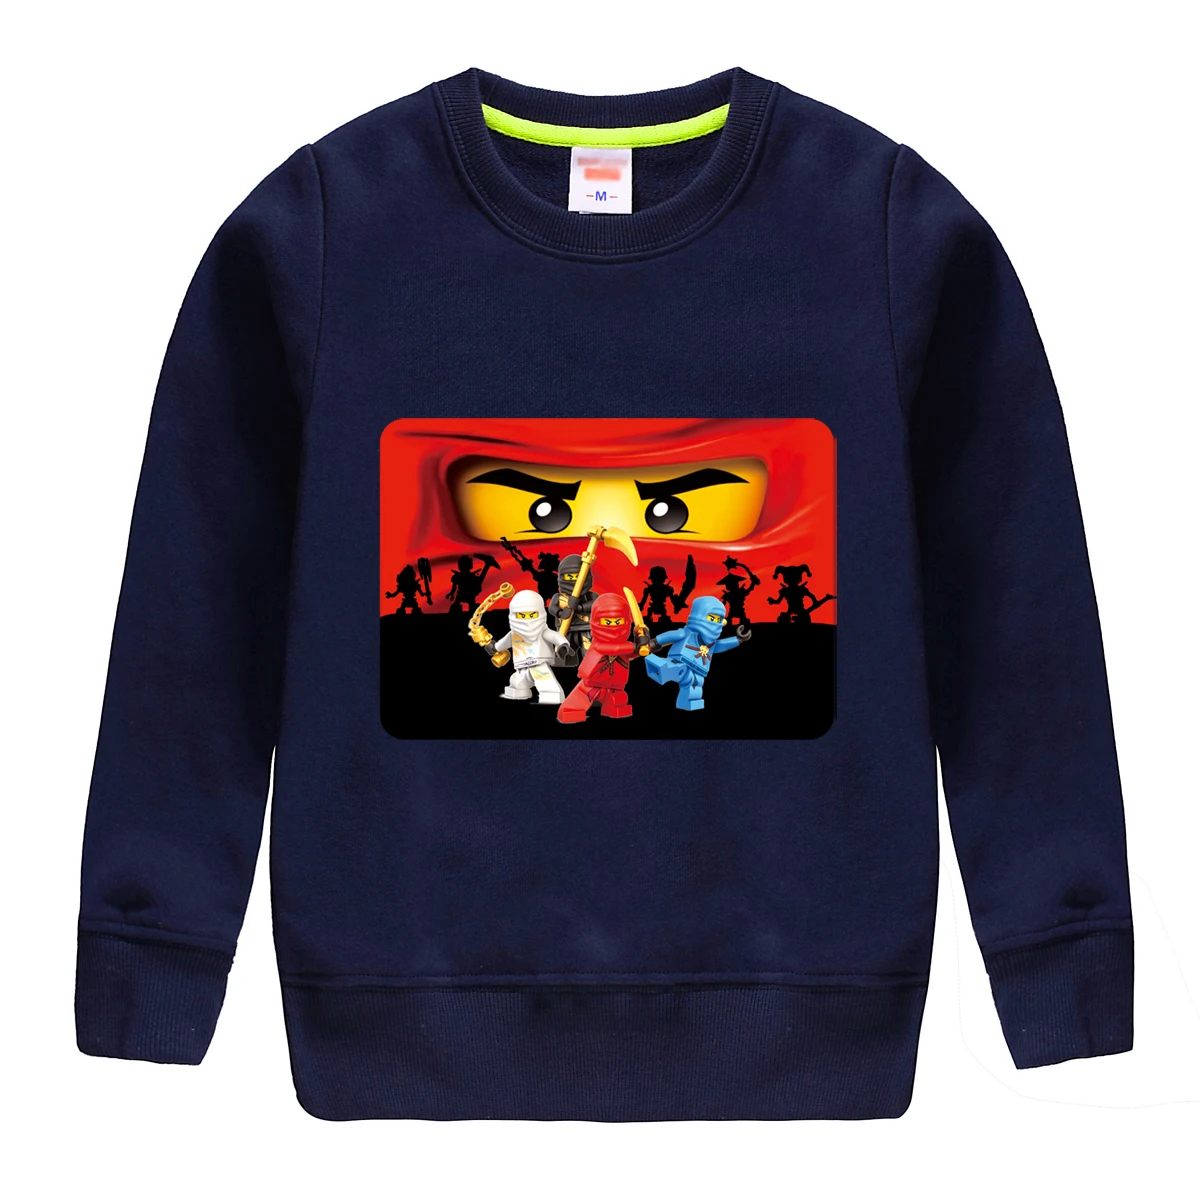 Зима-Осень cottonsweatshirt с стильная футболка с изображением персонажей видеоигр, детская одежда дизайн для детей, сохраняя тепло зимой